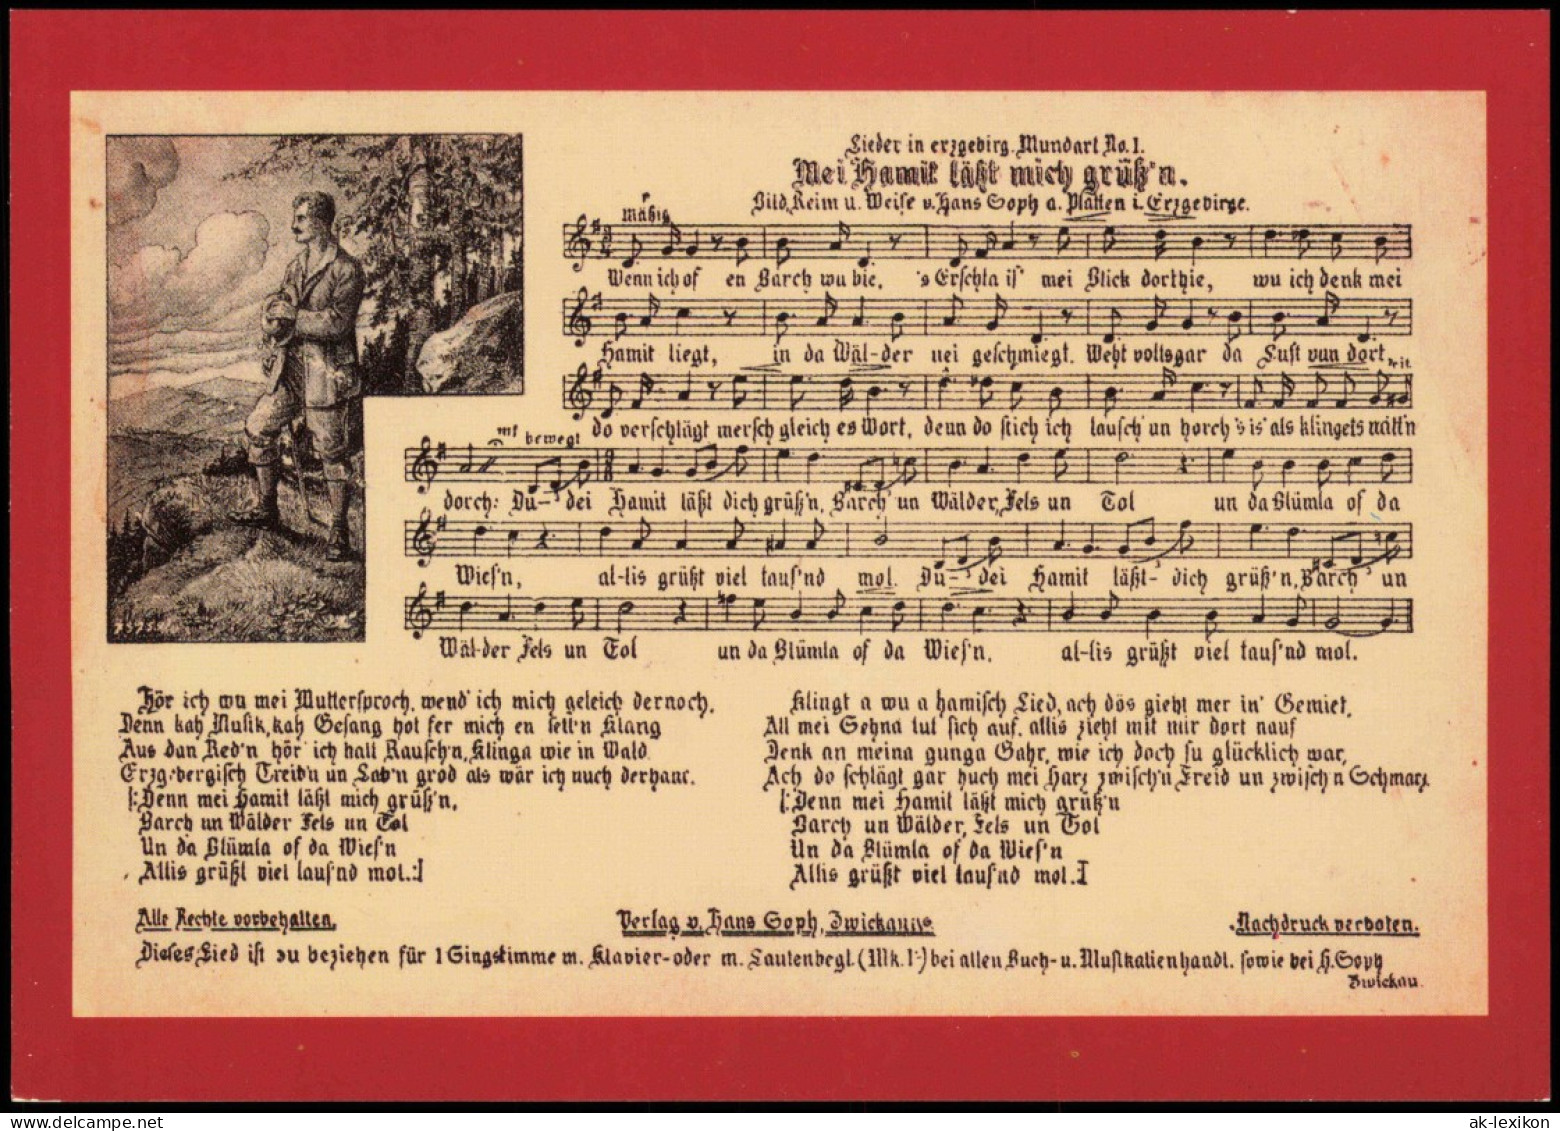 15 Historische Liedpostkarten aus dem Erzgebirge und Vogtland
DDR 1989